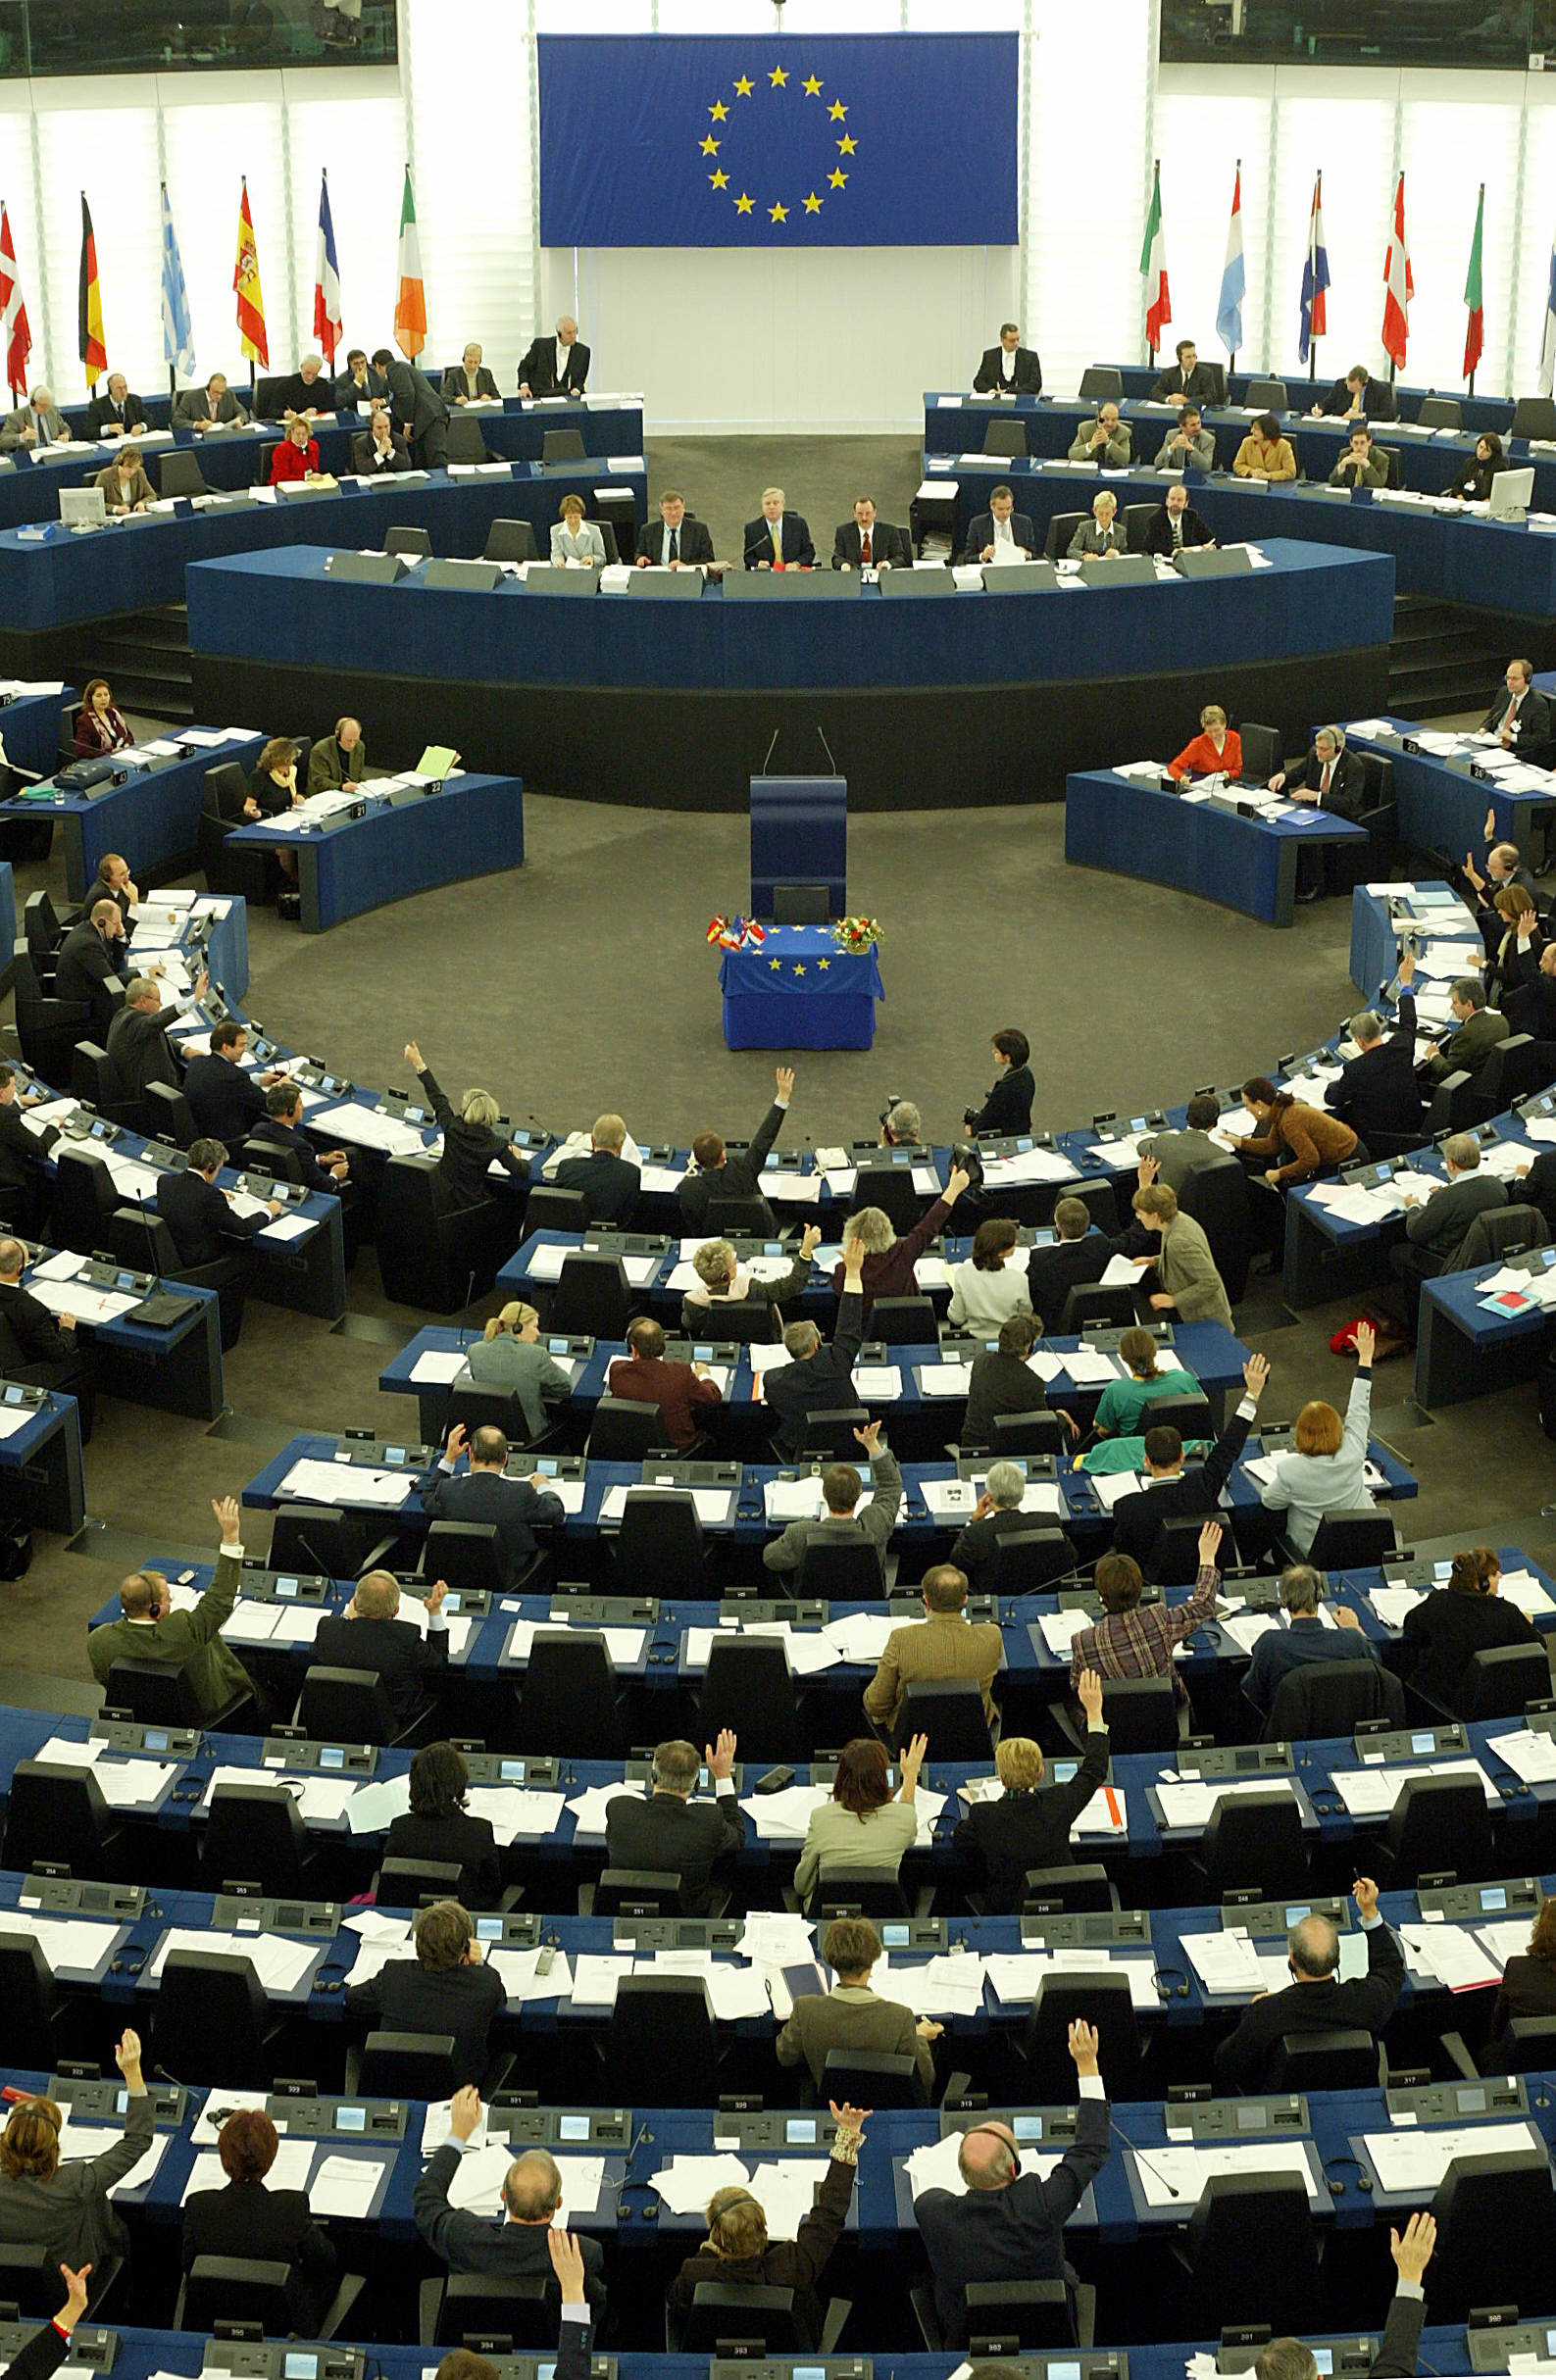 Εκατομμύρια ευρώ κερδίζουν οι ευρωβουλευτές εκτός Ευρωβουλής